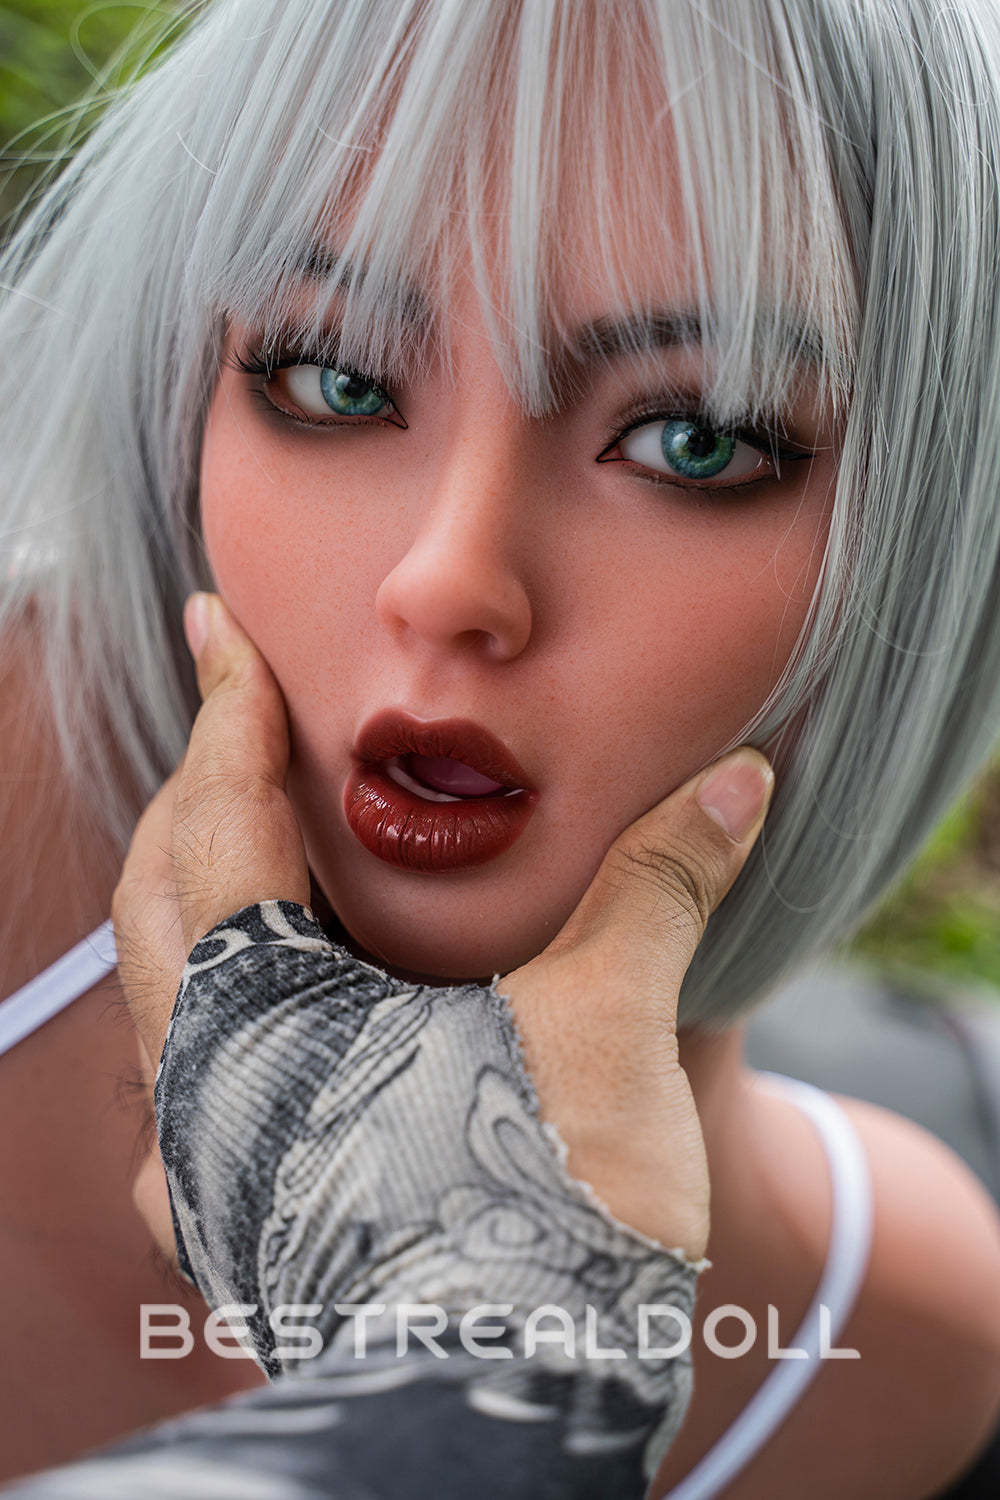 RIDMII Danica Unique Design 161cm #468 Realistic BBW Sex Doll Silicone Head Blowjob Adult Love Doll TPE Body